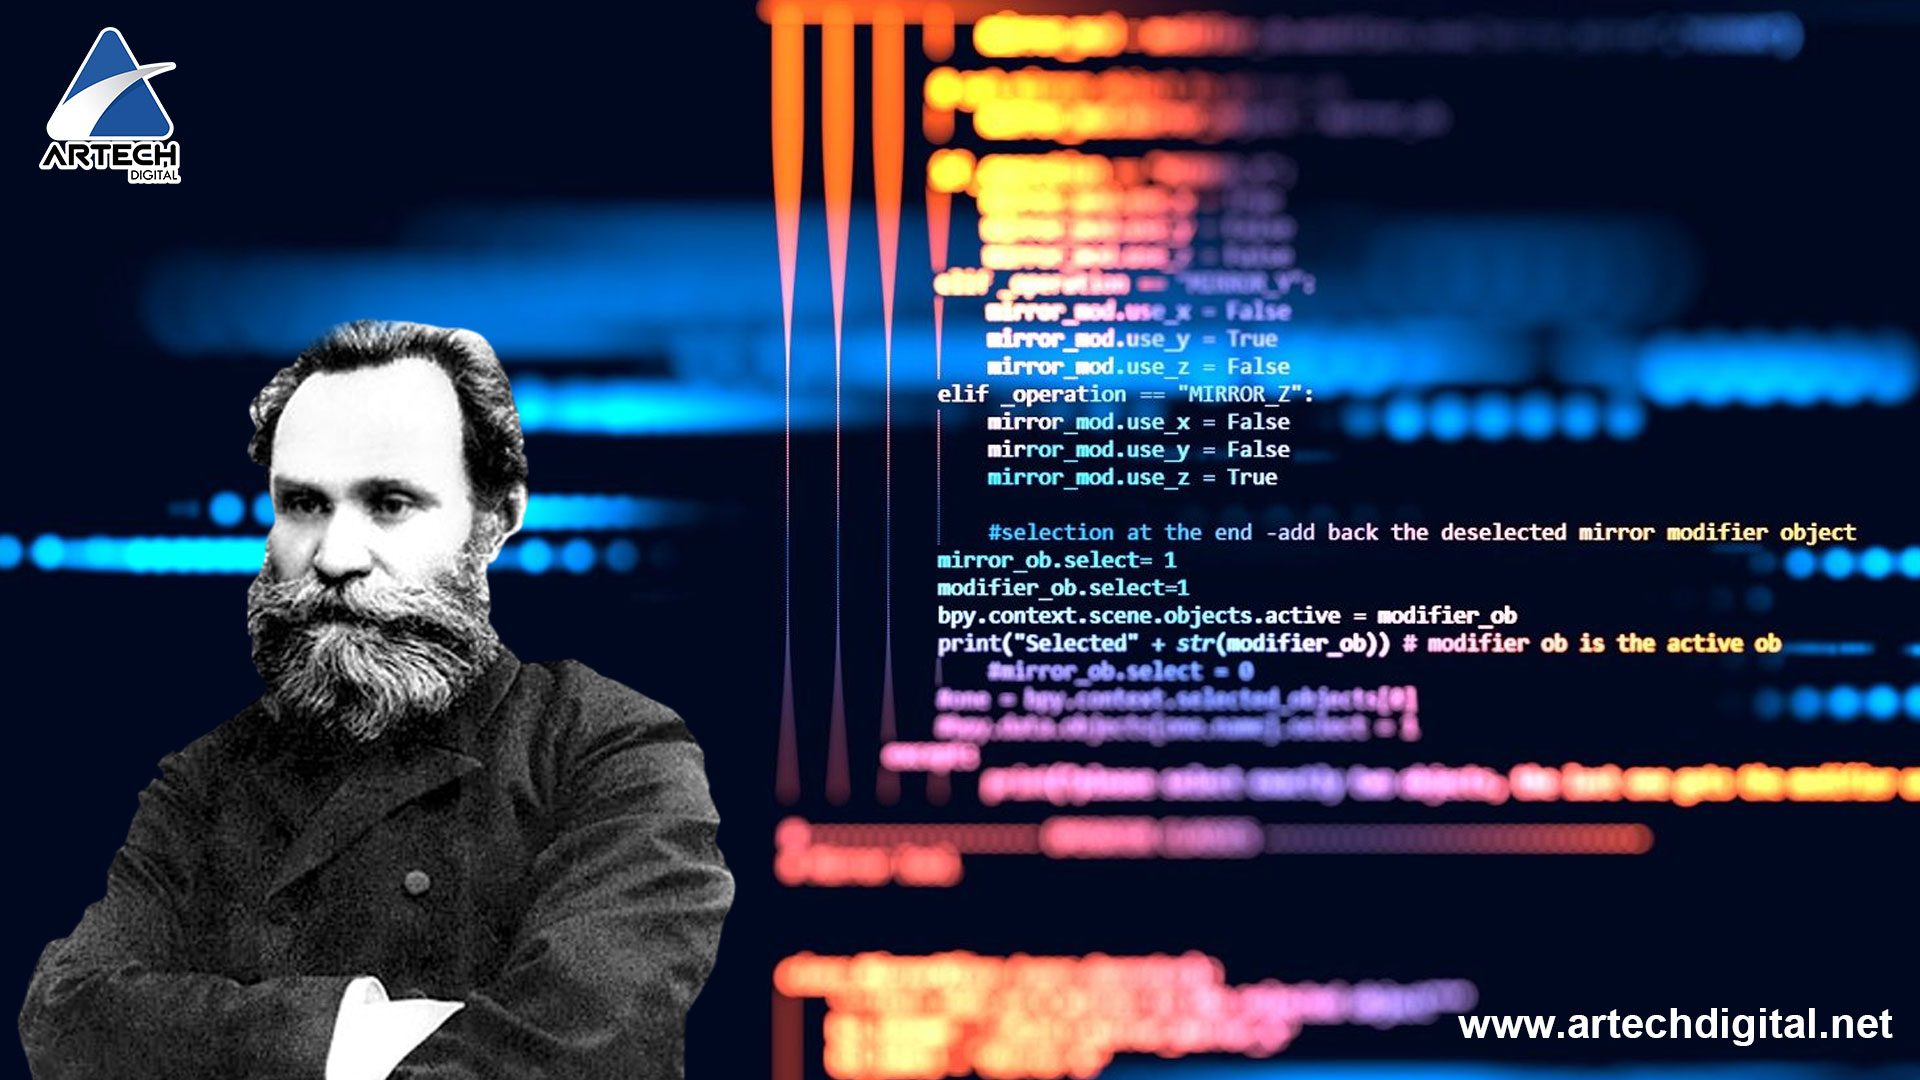 Ivan pavlov y su algoritmo - artechdigital